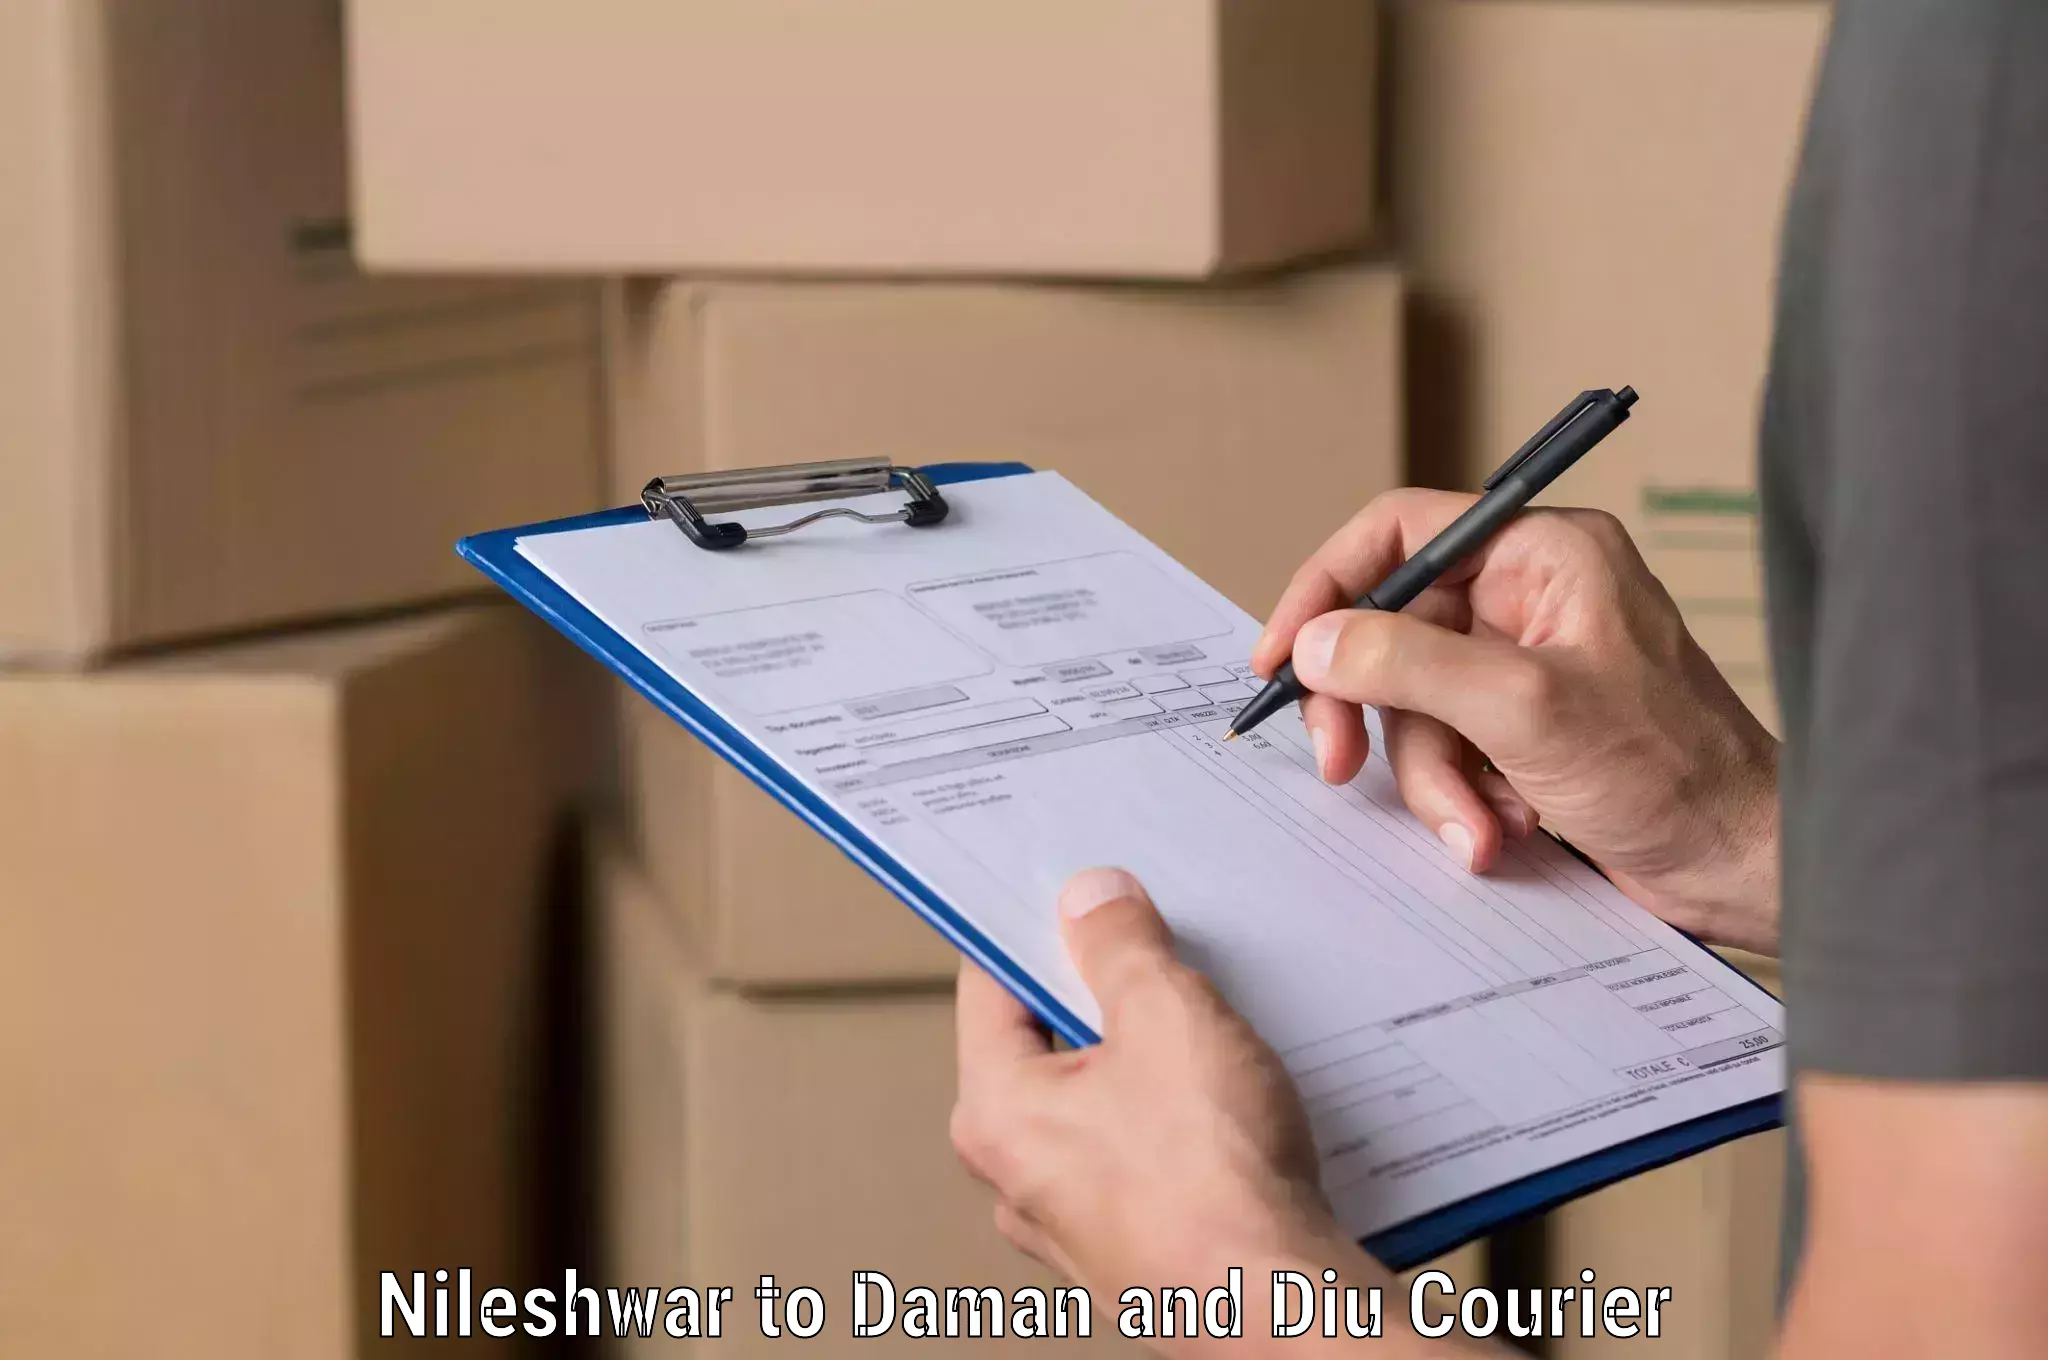 Tech-enabled shipping Nileshwar to Diu